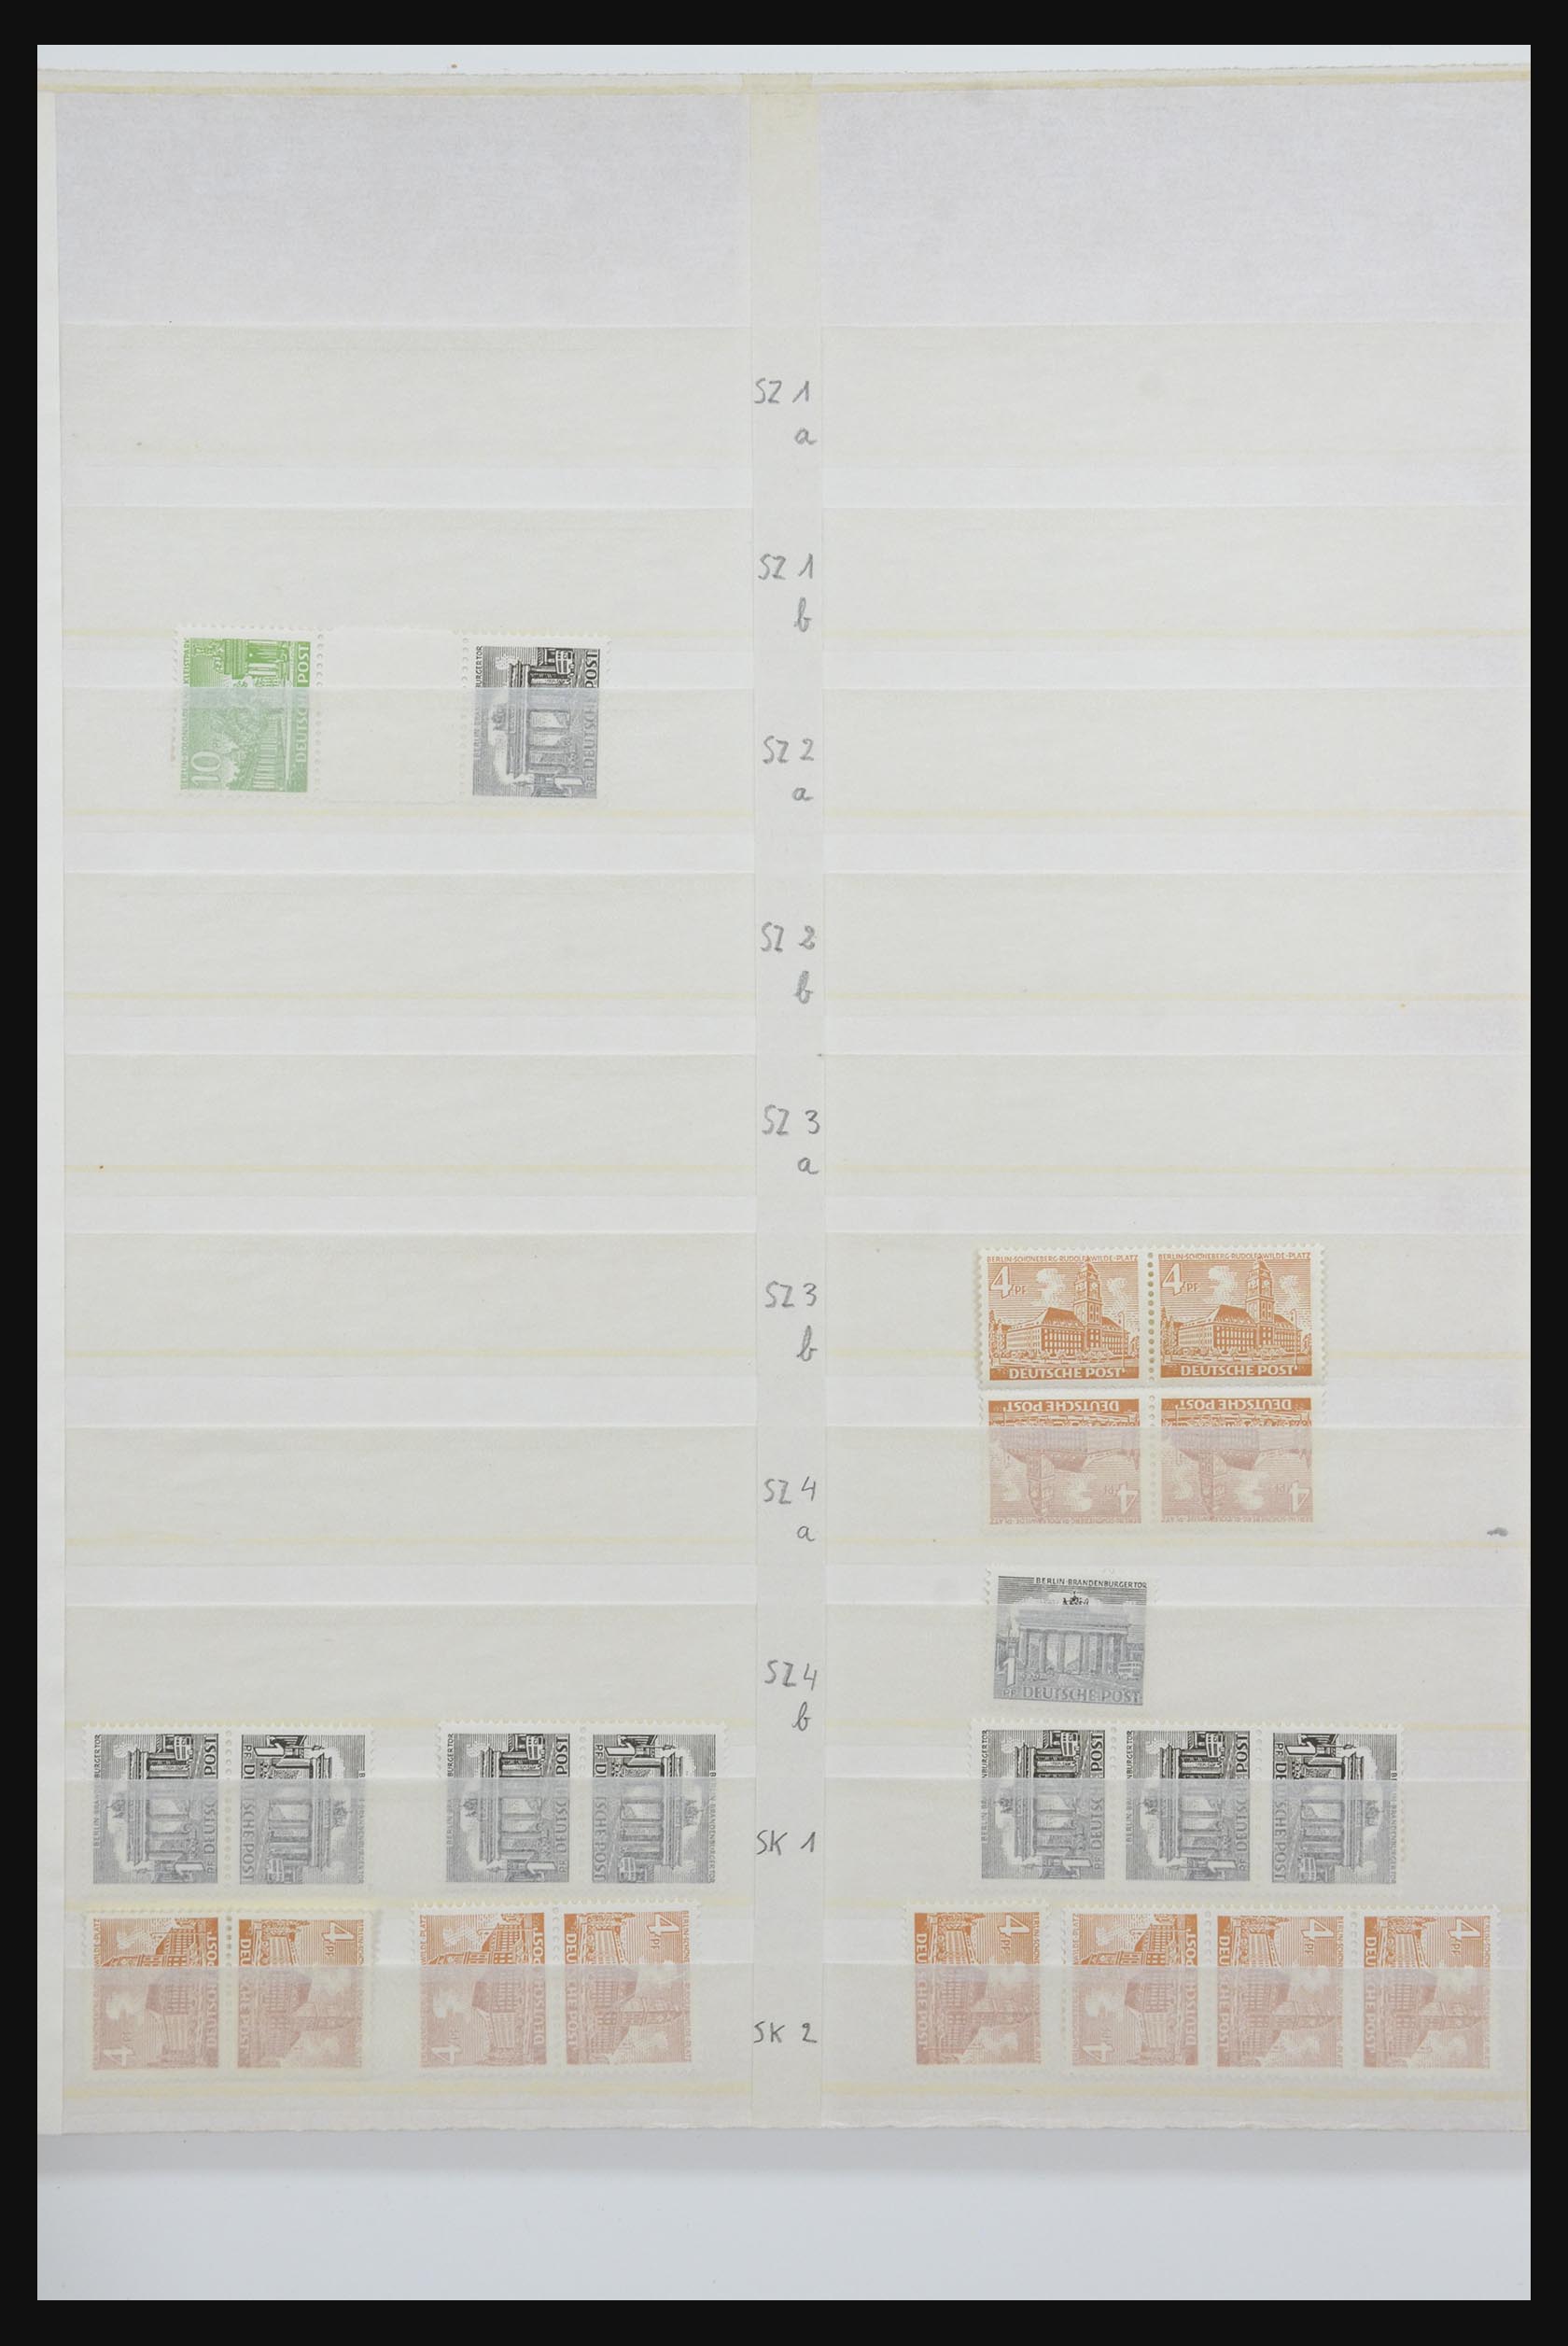 31884 074 - 31884 Duitsland combinaties 1920-1980.